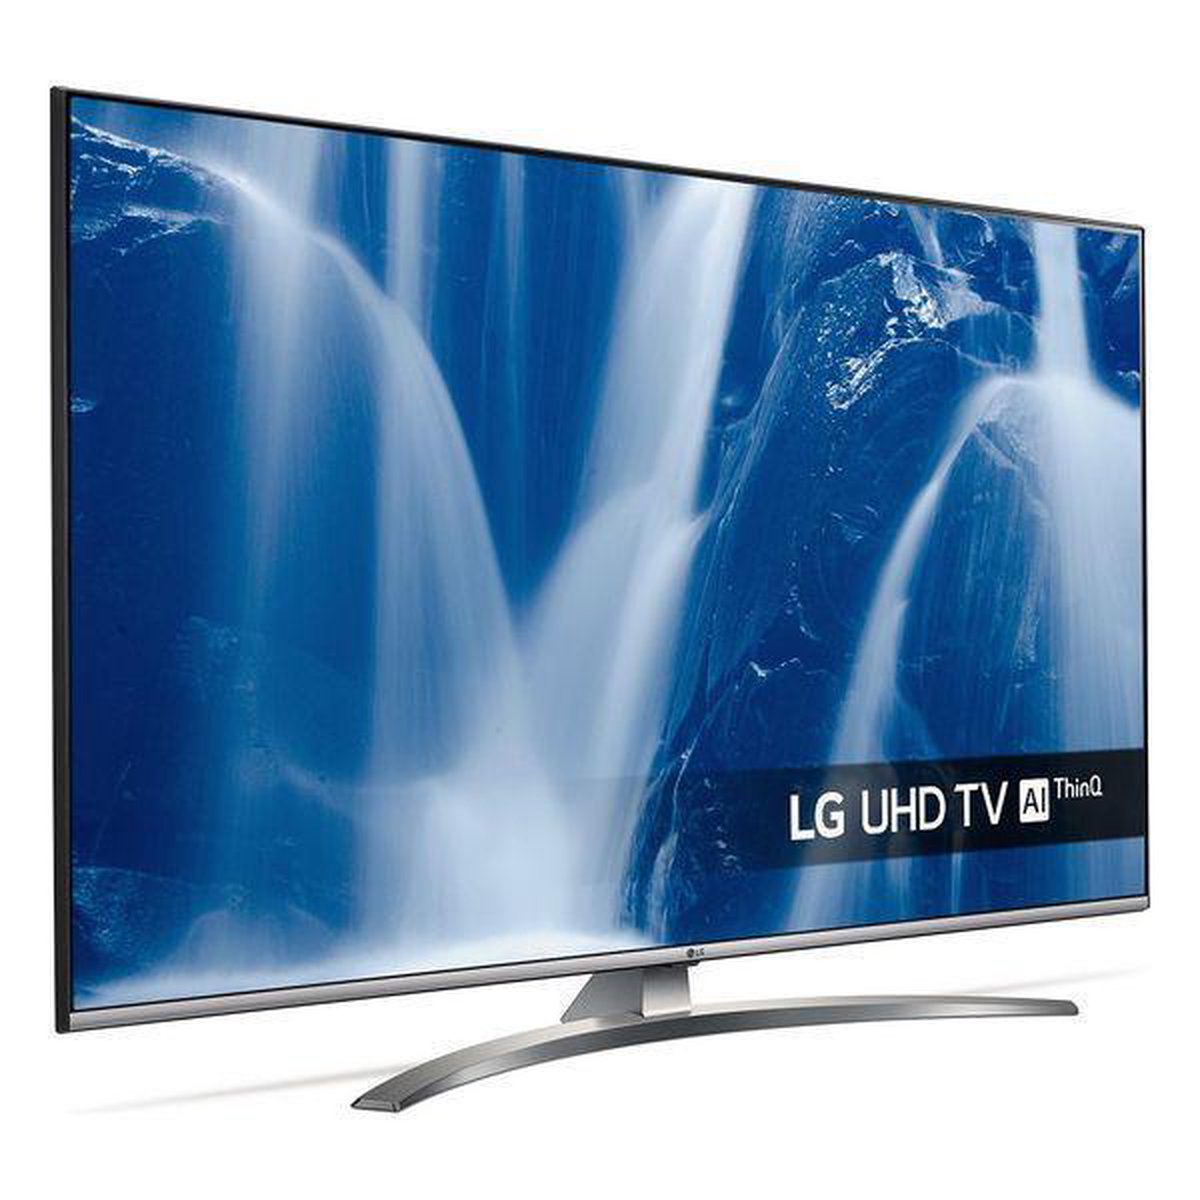 39+ Lg 43um7600 4k uhd smart led tv best price information